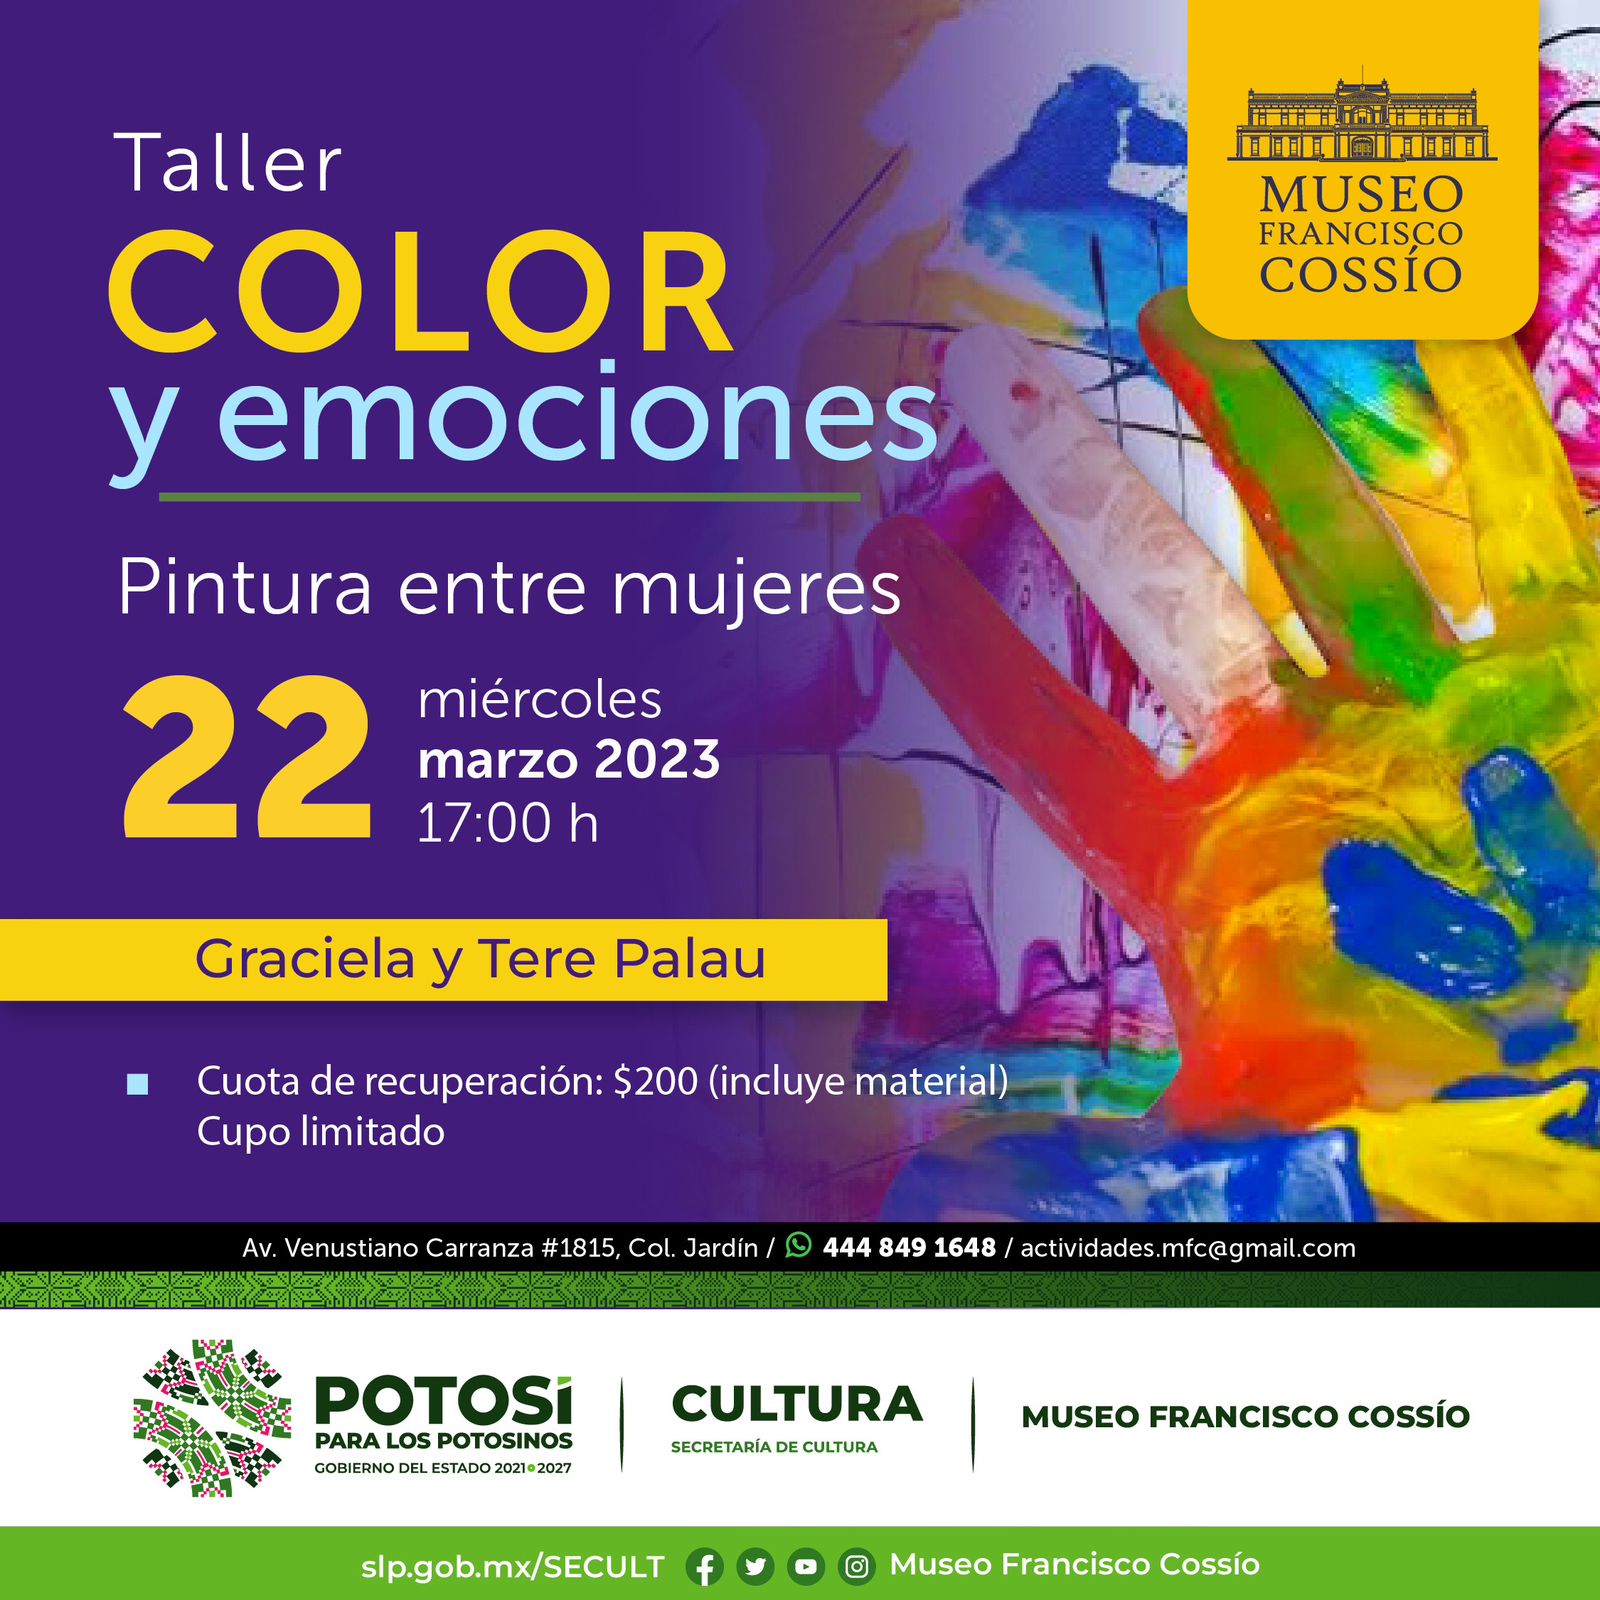 SECULT invita al público en general a participar en el taller “Color y Emociones” que impartirán Graciela y Ter Palau